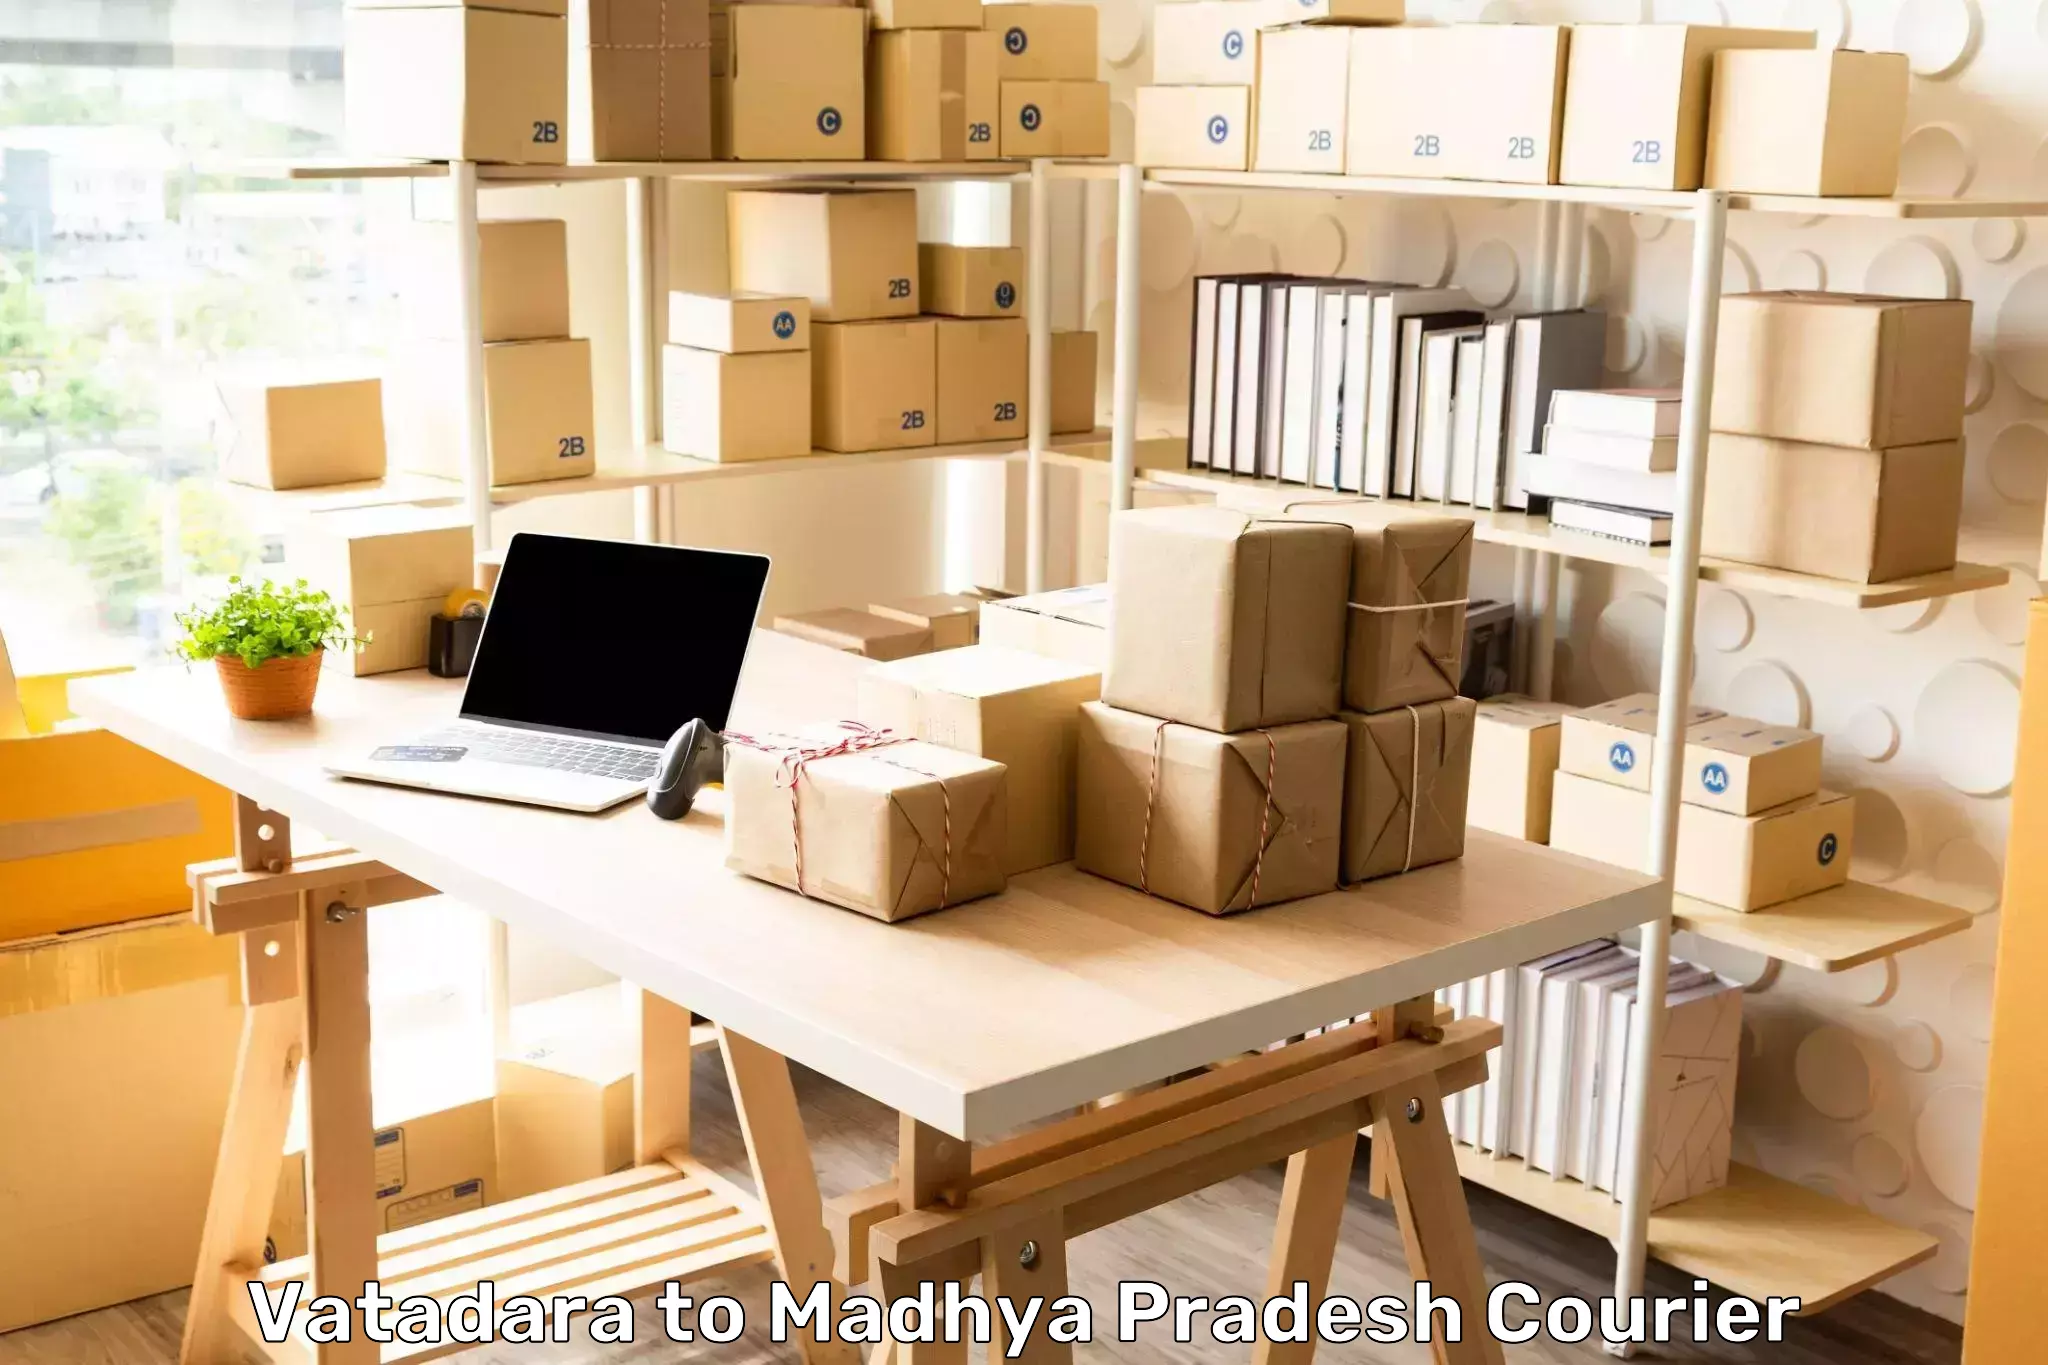 Urgent courier needs Vatadara to Madhya Pradesh